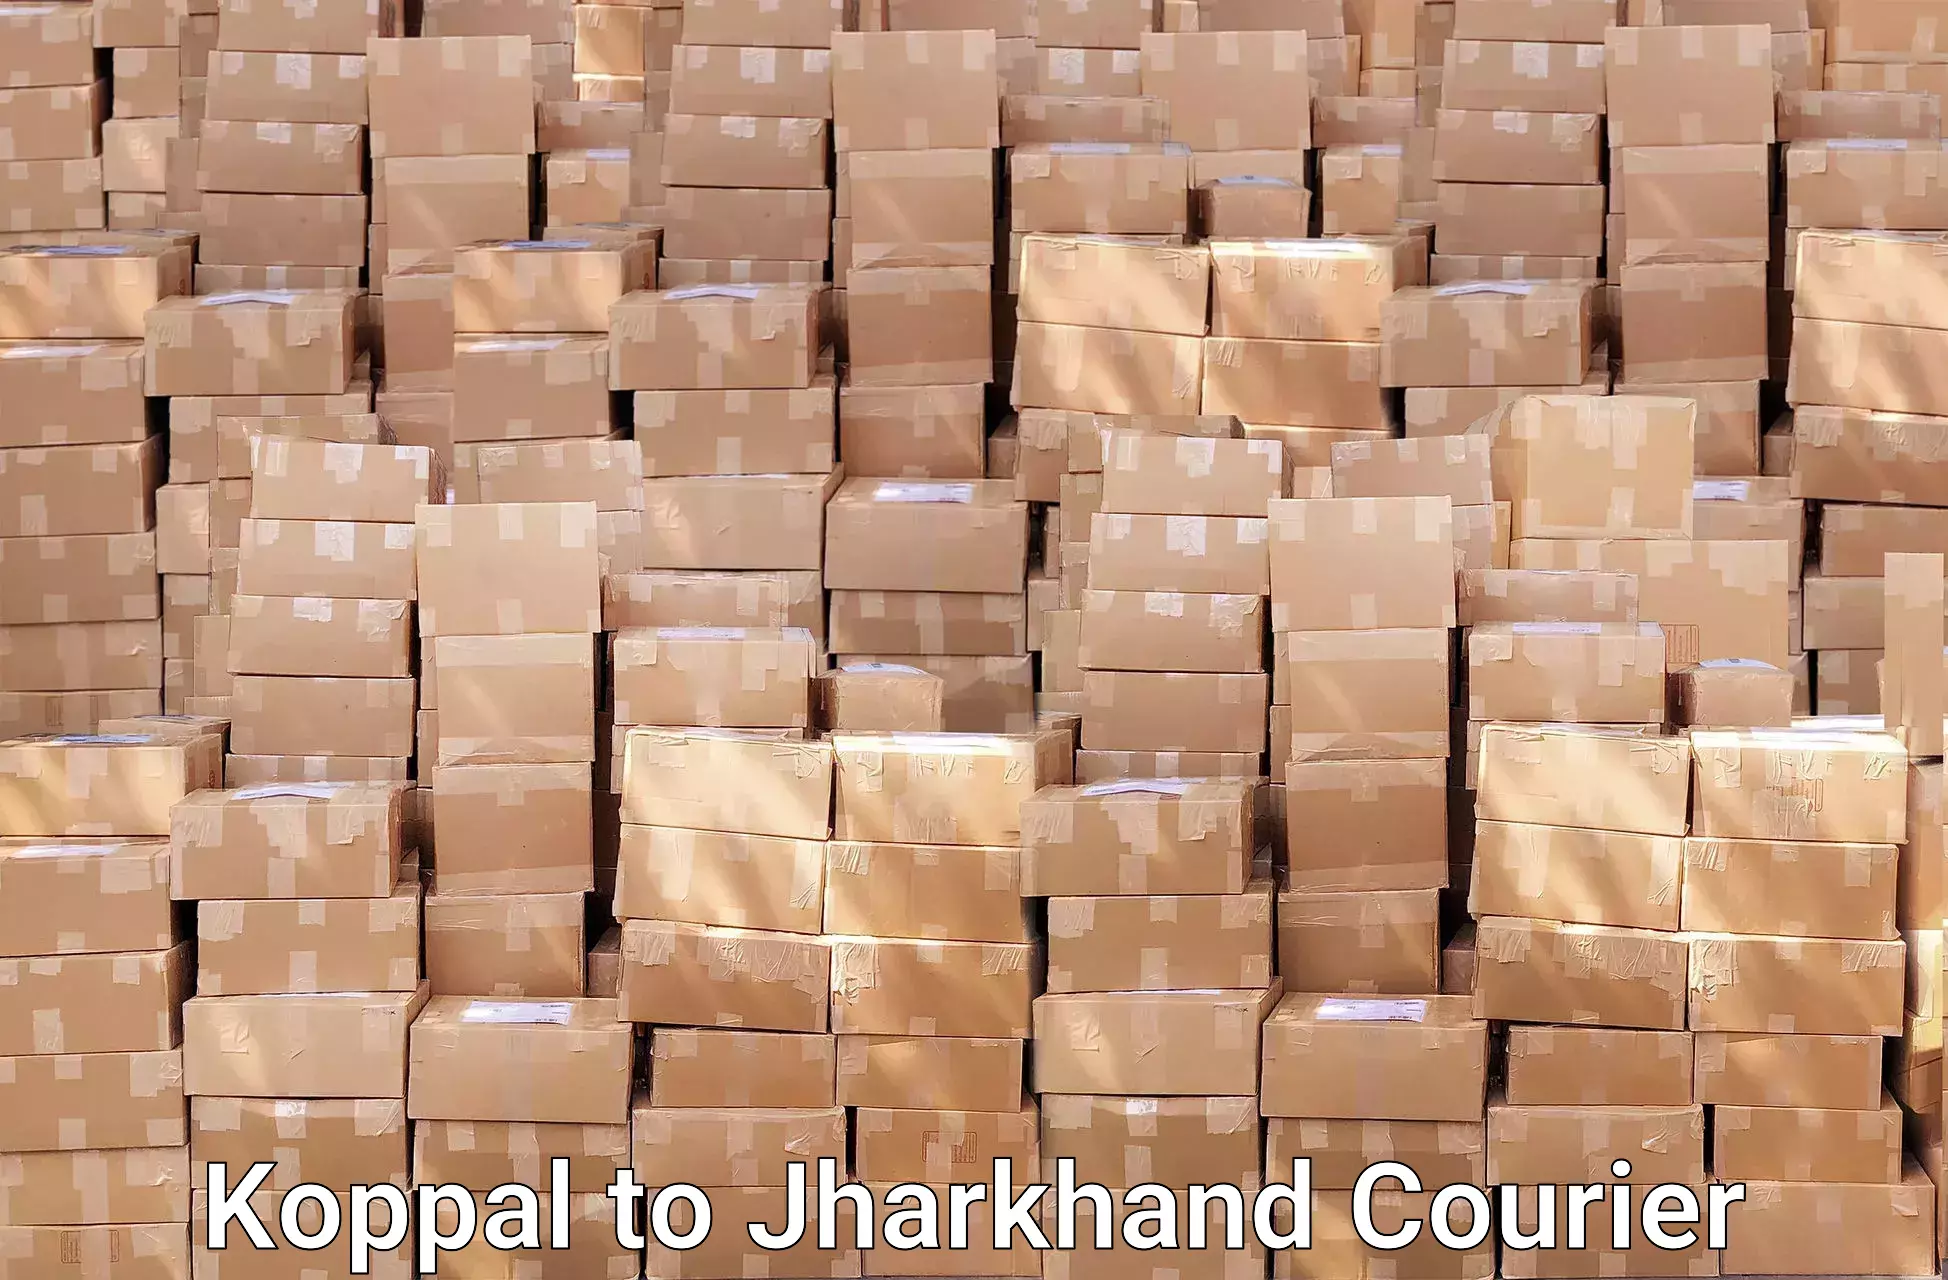 Furniture moving experts Koppal to Shikaripara